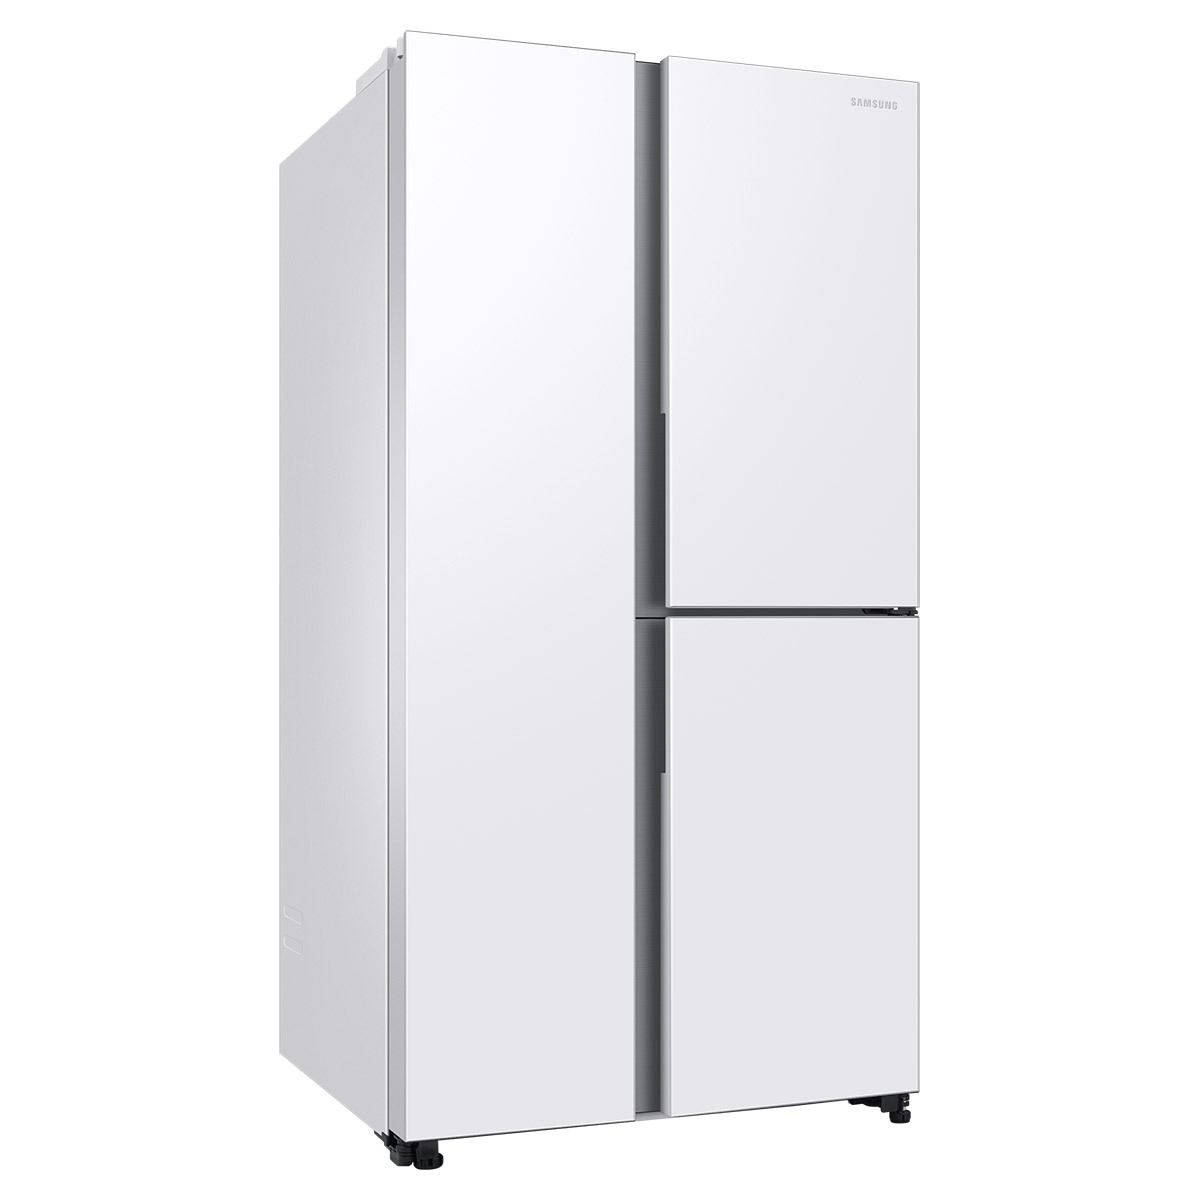 삼성 양문형 냉장고 846L - 스노우 화이트 메탈